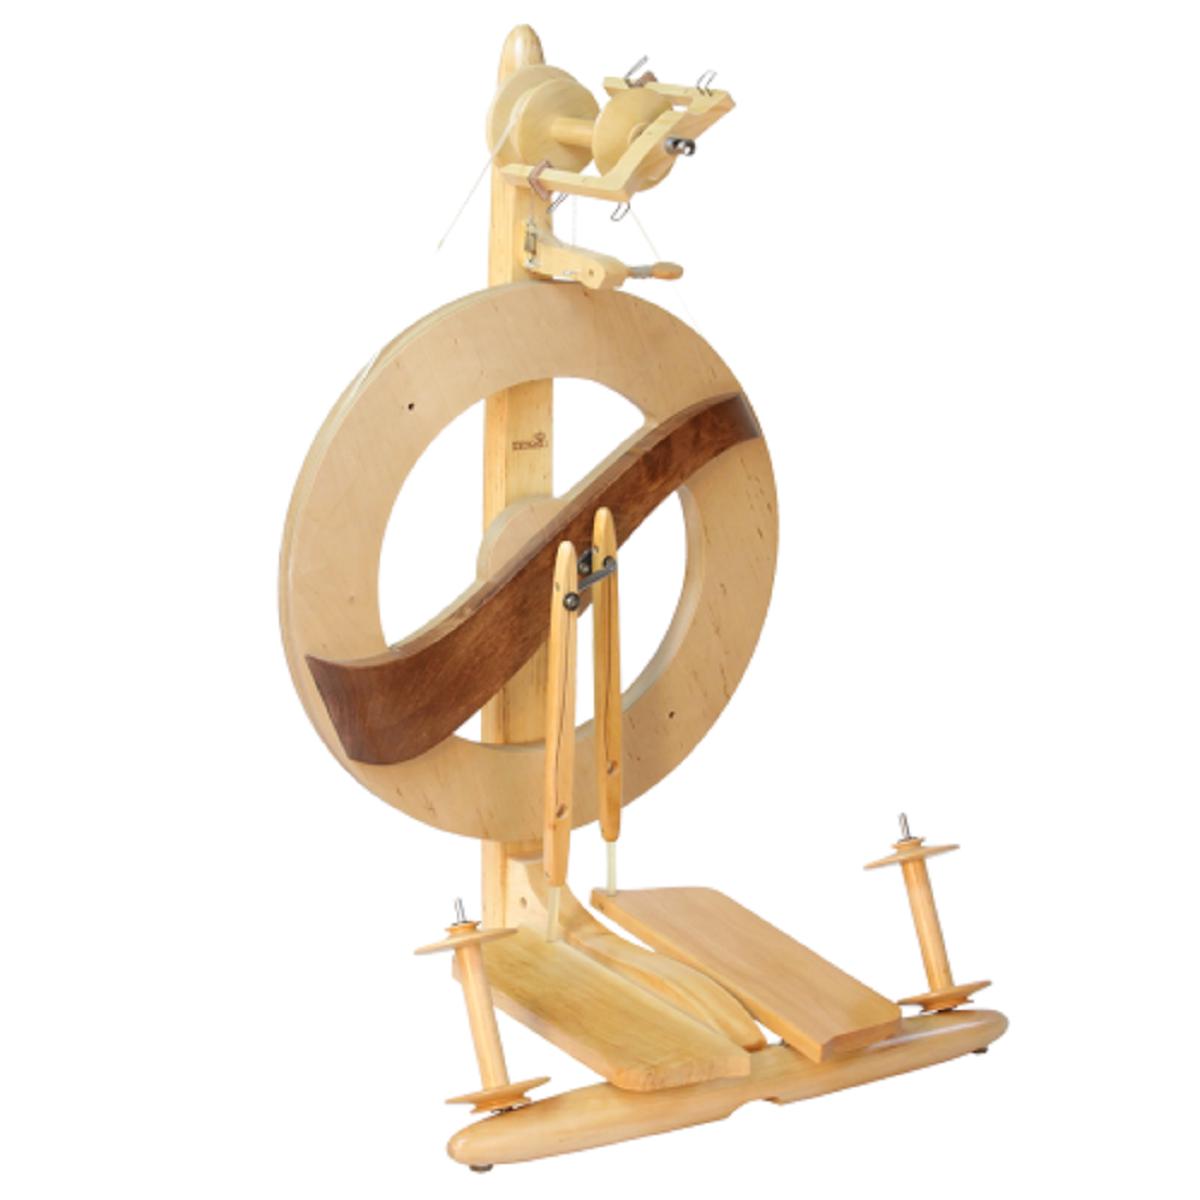 Kromski Fantasia Spinning Wheel-Spinning Wheel-Kromski-Finished-Revolution Fibers